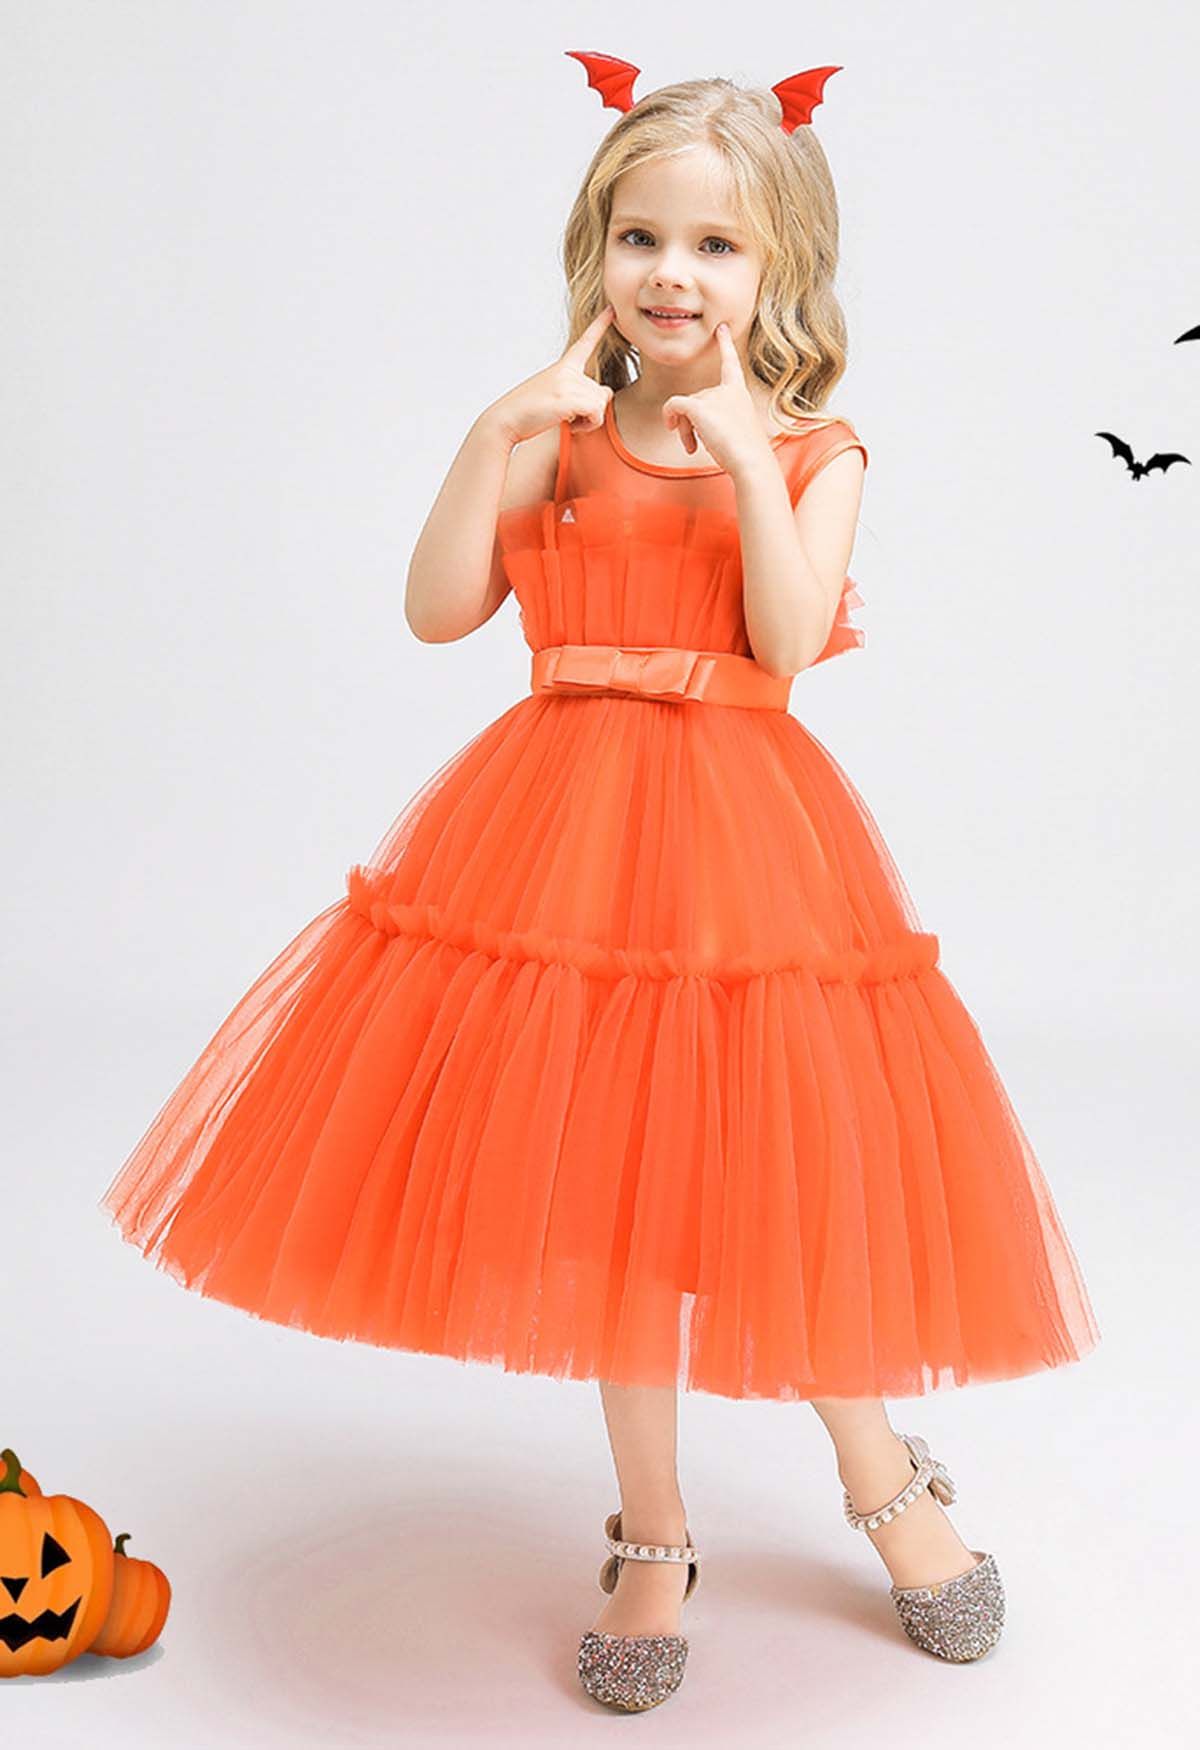 Tüllkleid mit Schleife und Taille in Orange für Kinder